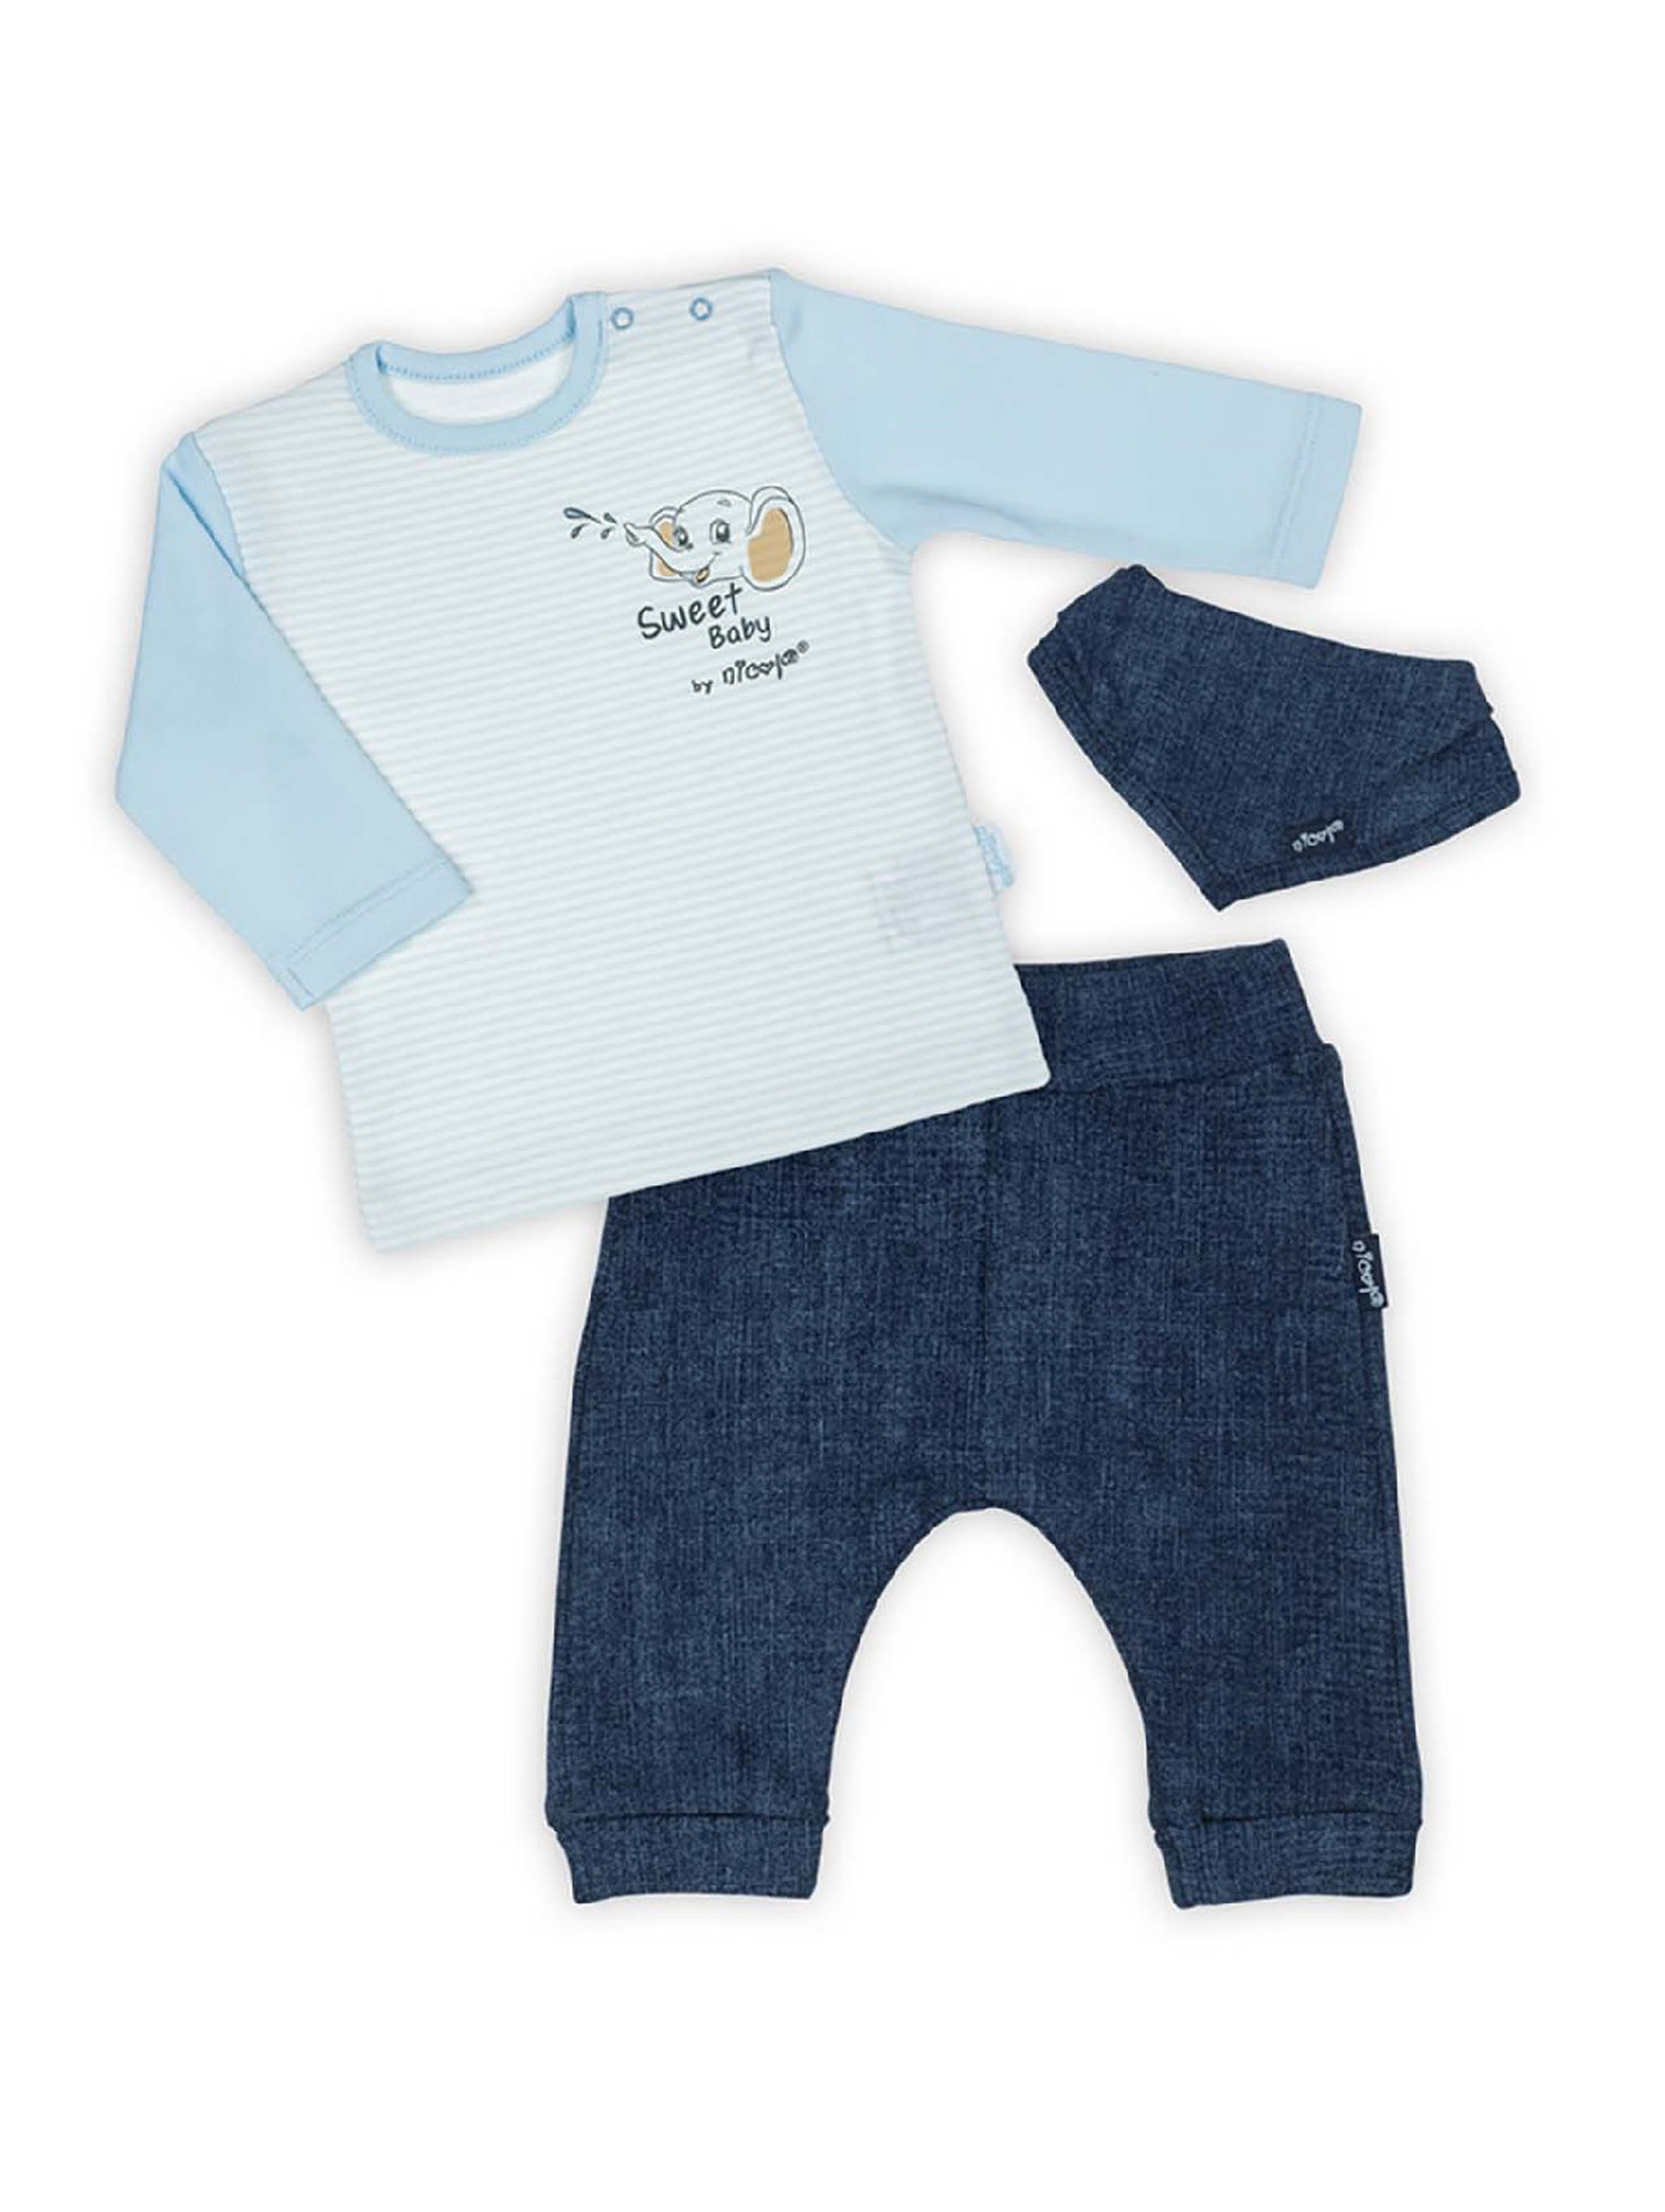 Komplet dla niemowlaka- bluzka, długie spodnie i apaszka